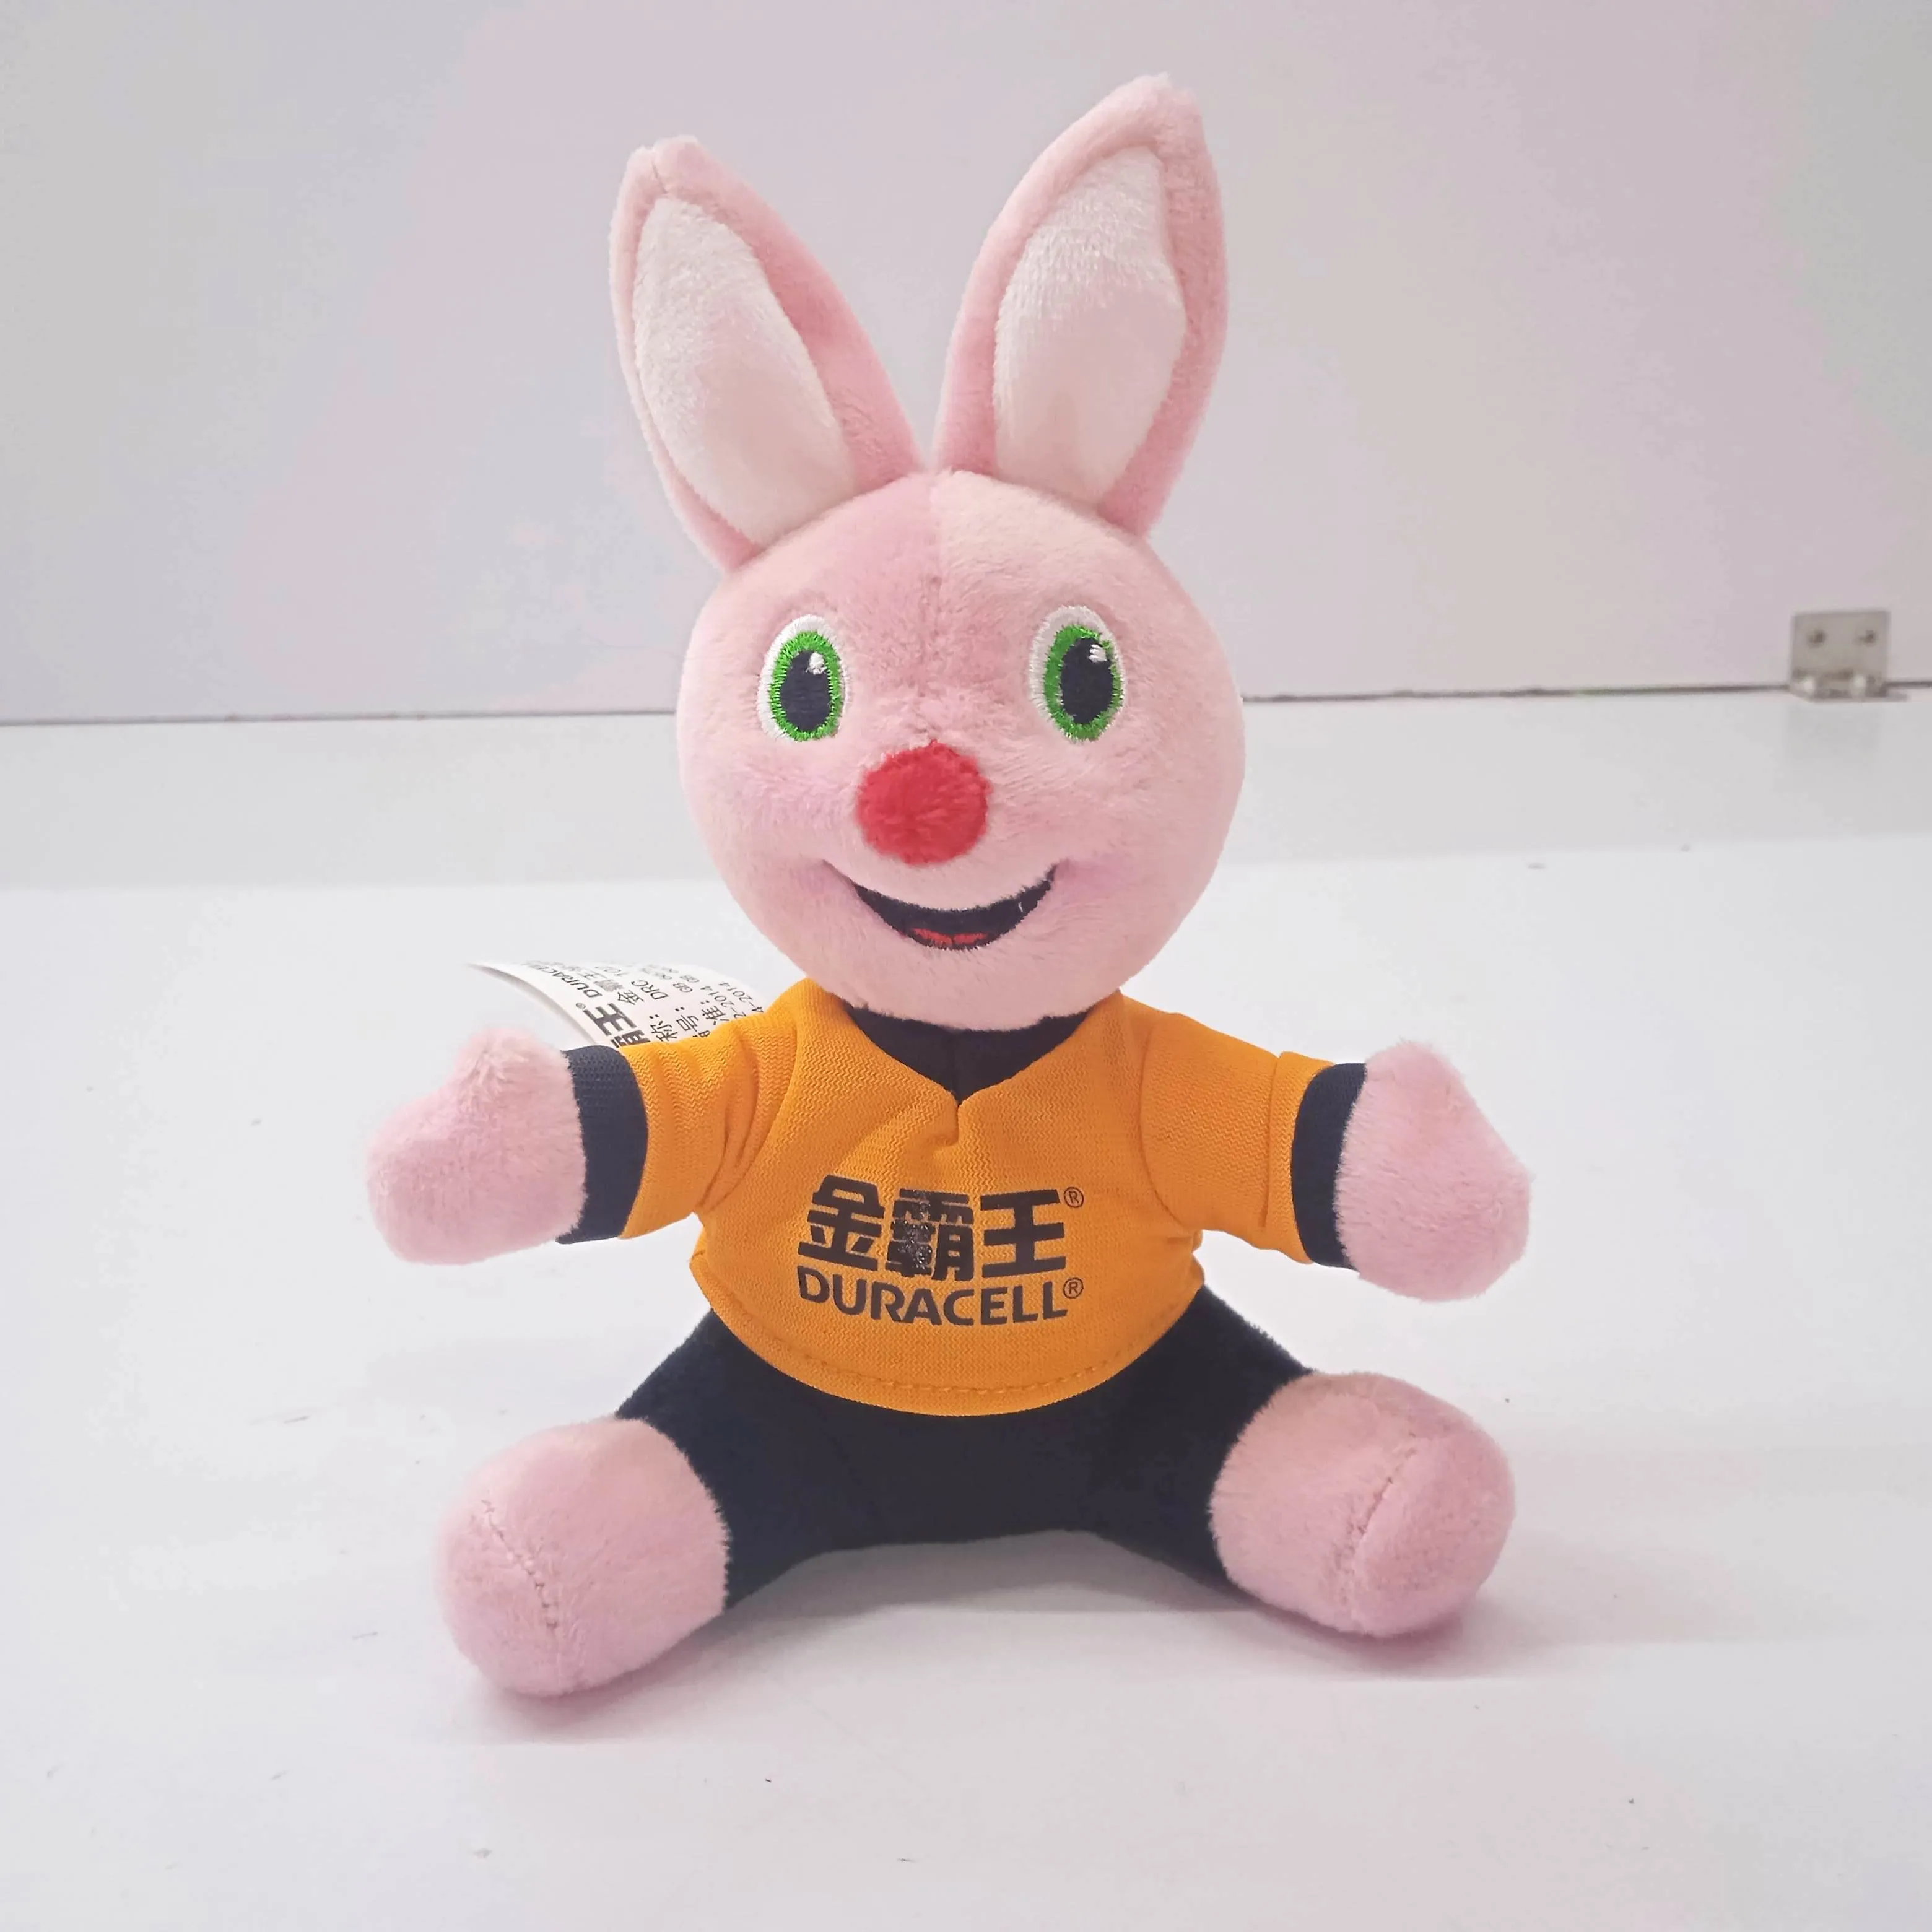 양주 크리스마스 선물 장난감 제품 검사/무역 보증 서비스 광동/사전 선적 검사 서비스 zhejiang